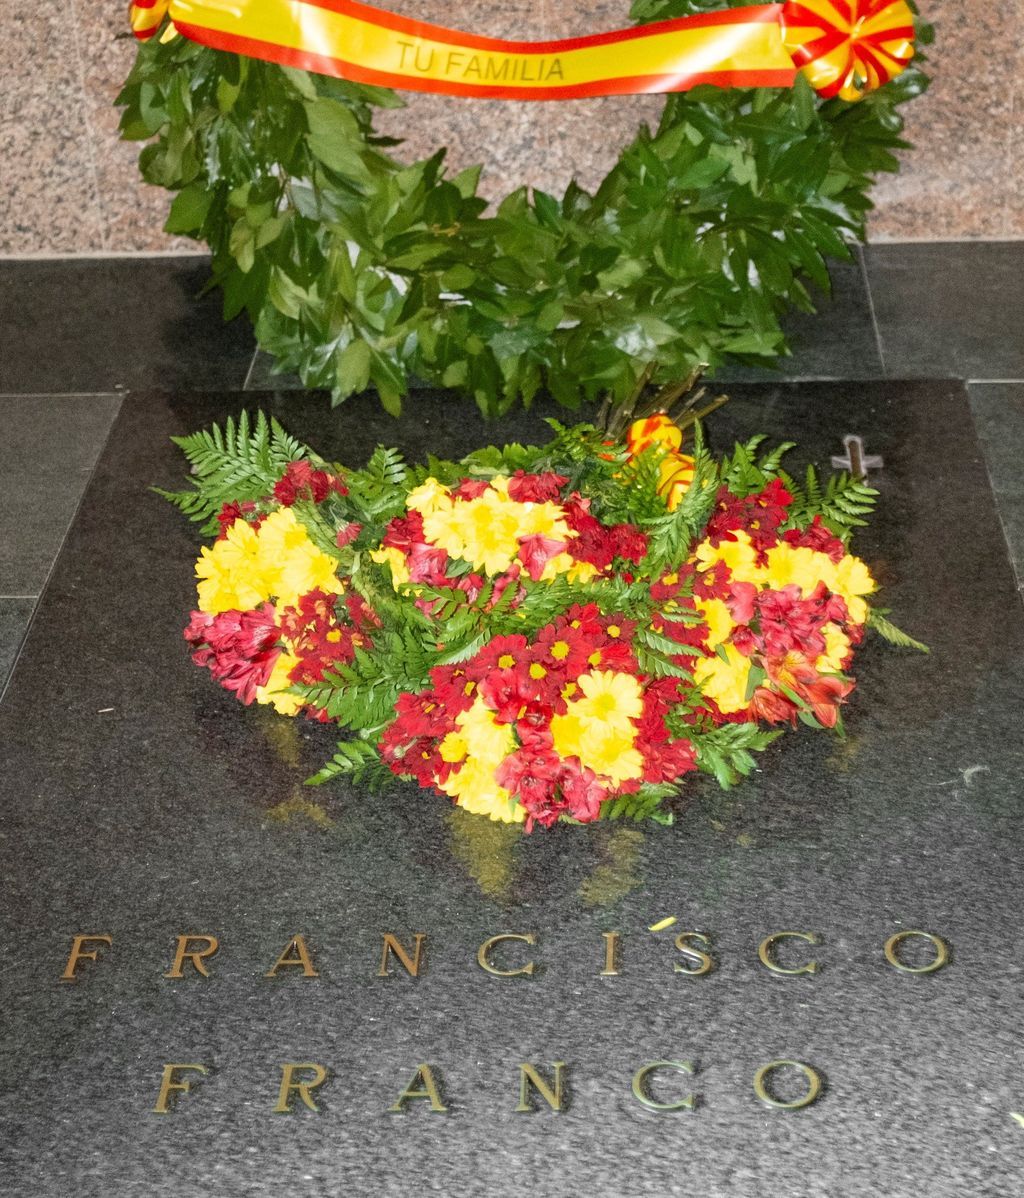 tumba de franco